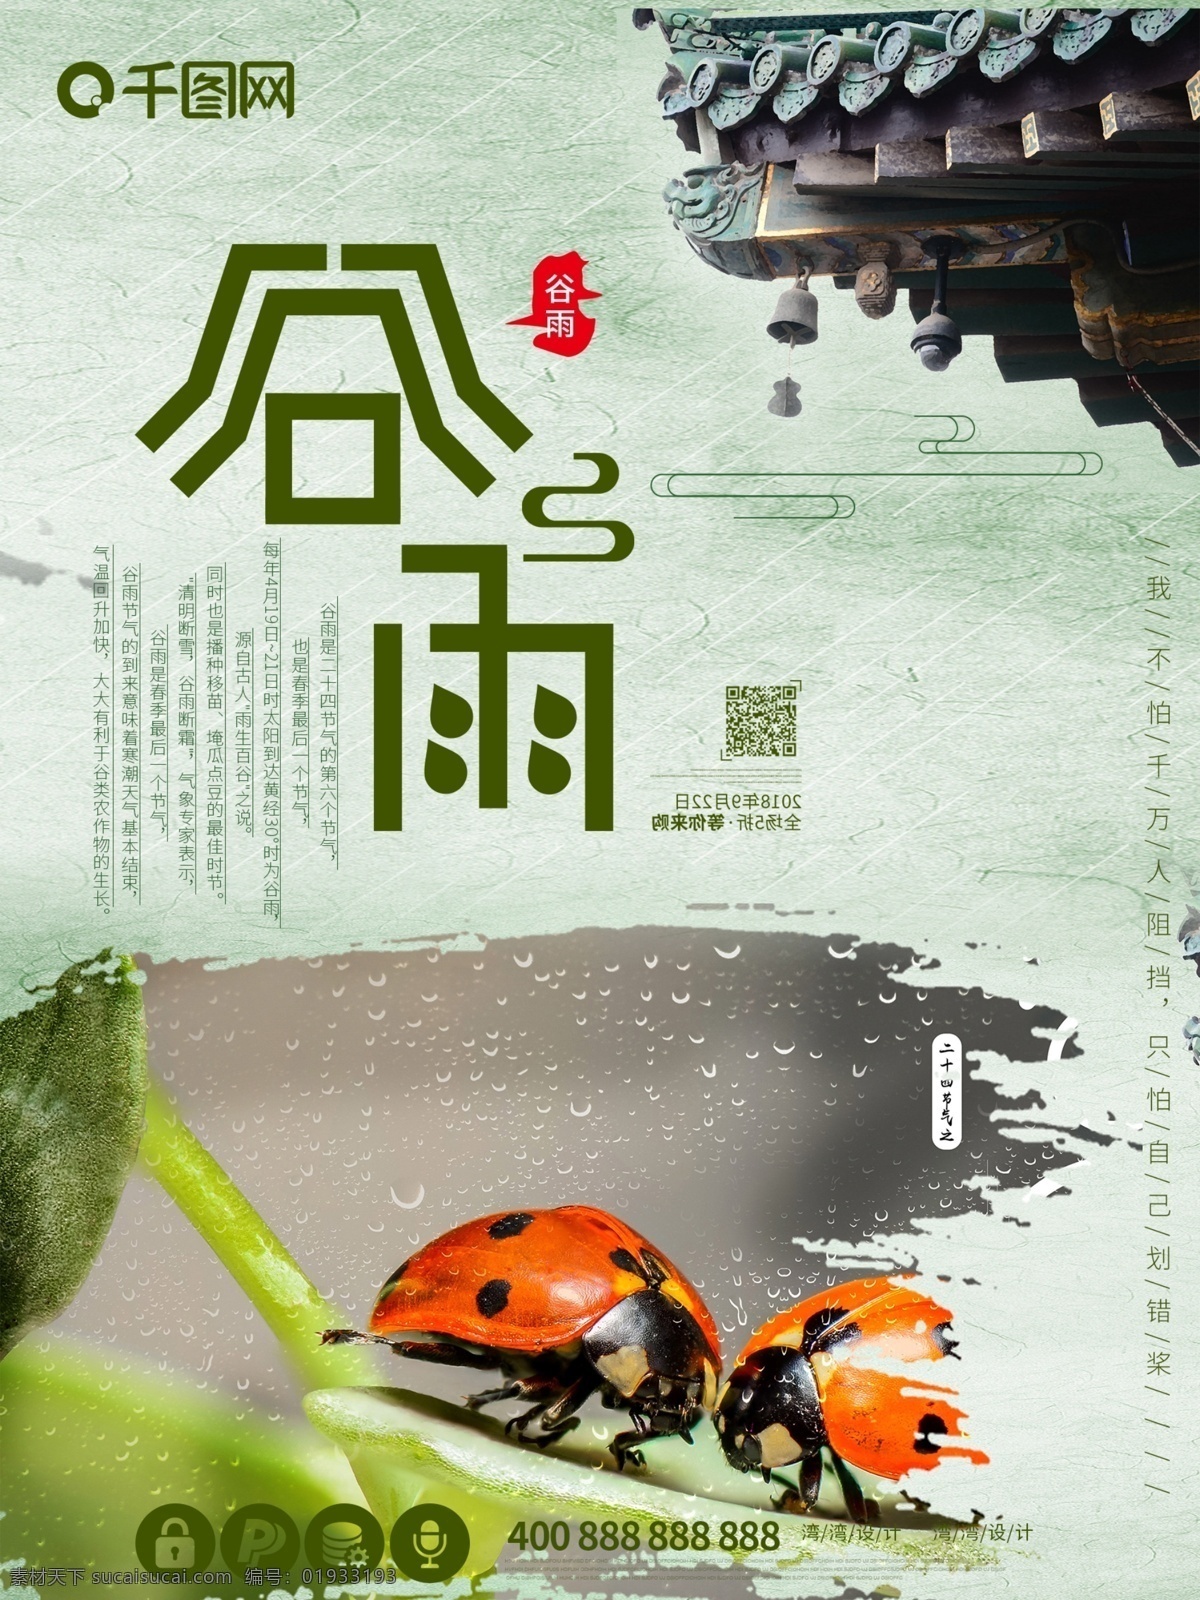 谷雨 中国 传统节日 节气 原创 大气 创意 海报 中国传统节日 节气之一 复古